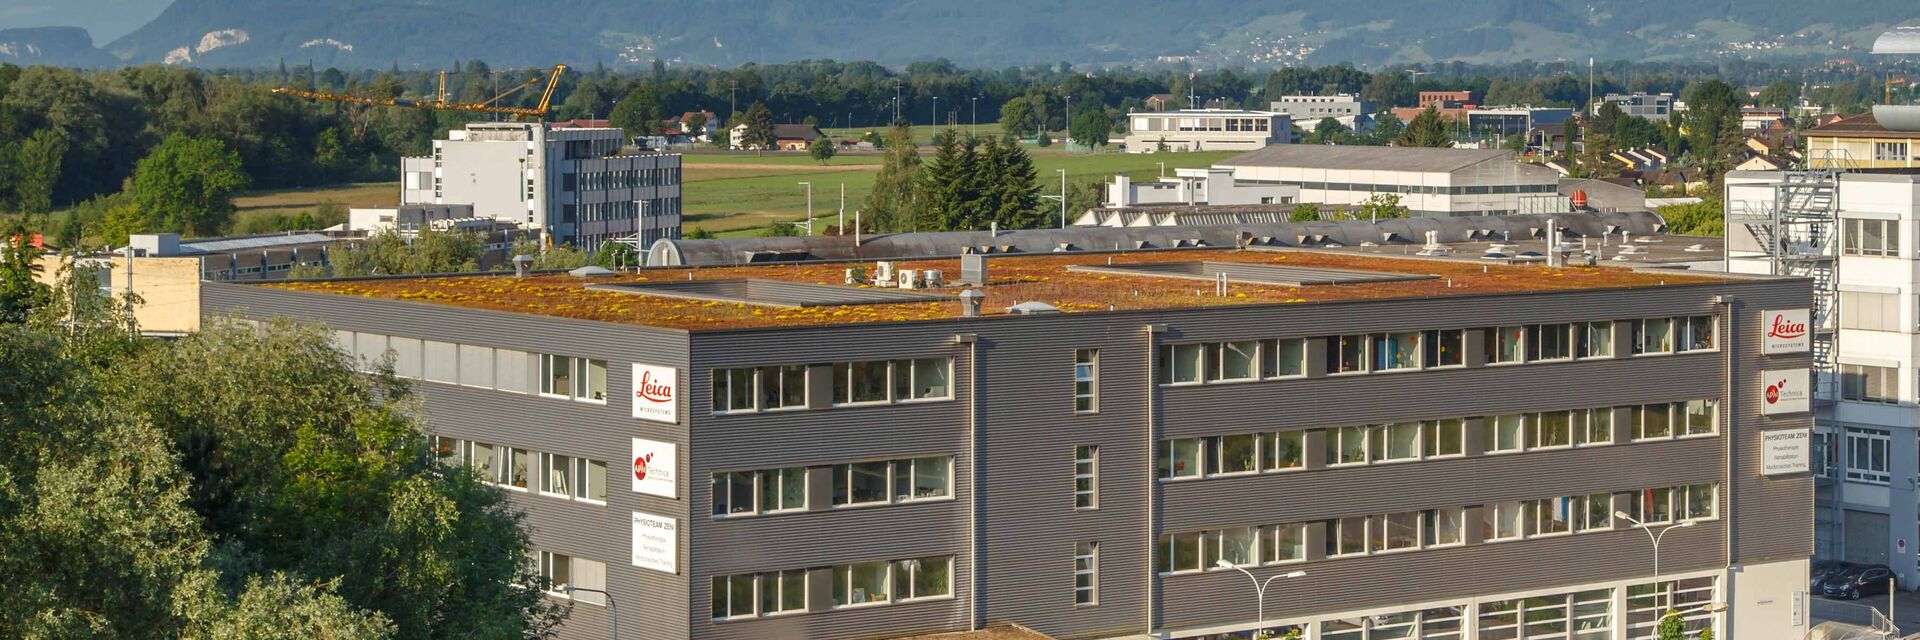 Leica Microsystems headquarters in Heerbrugg, Switzerland